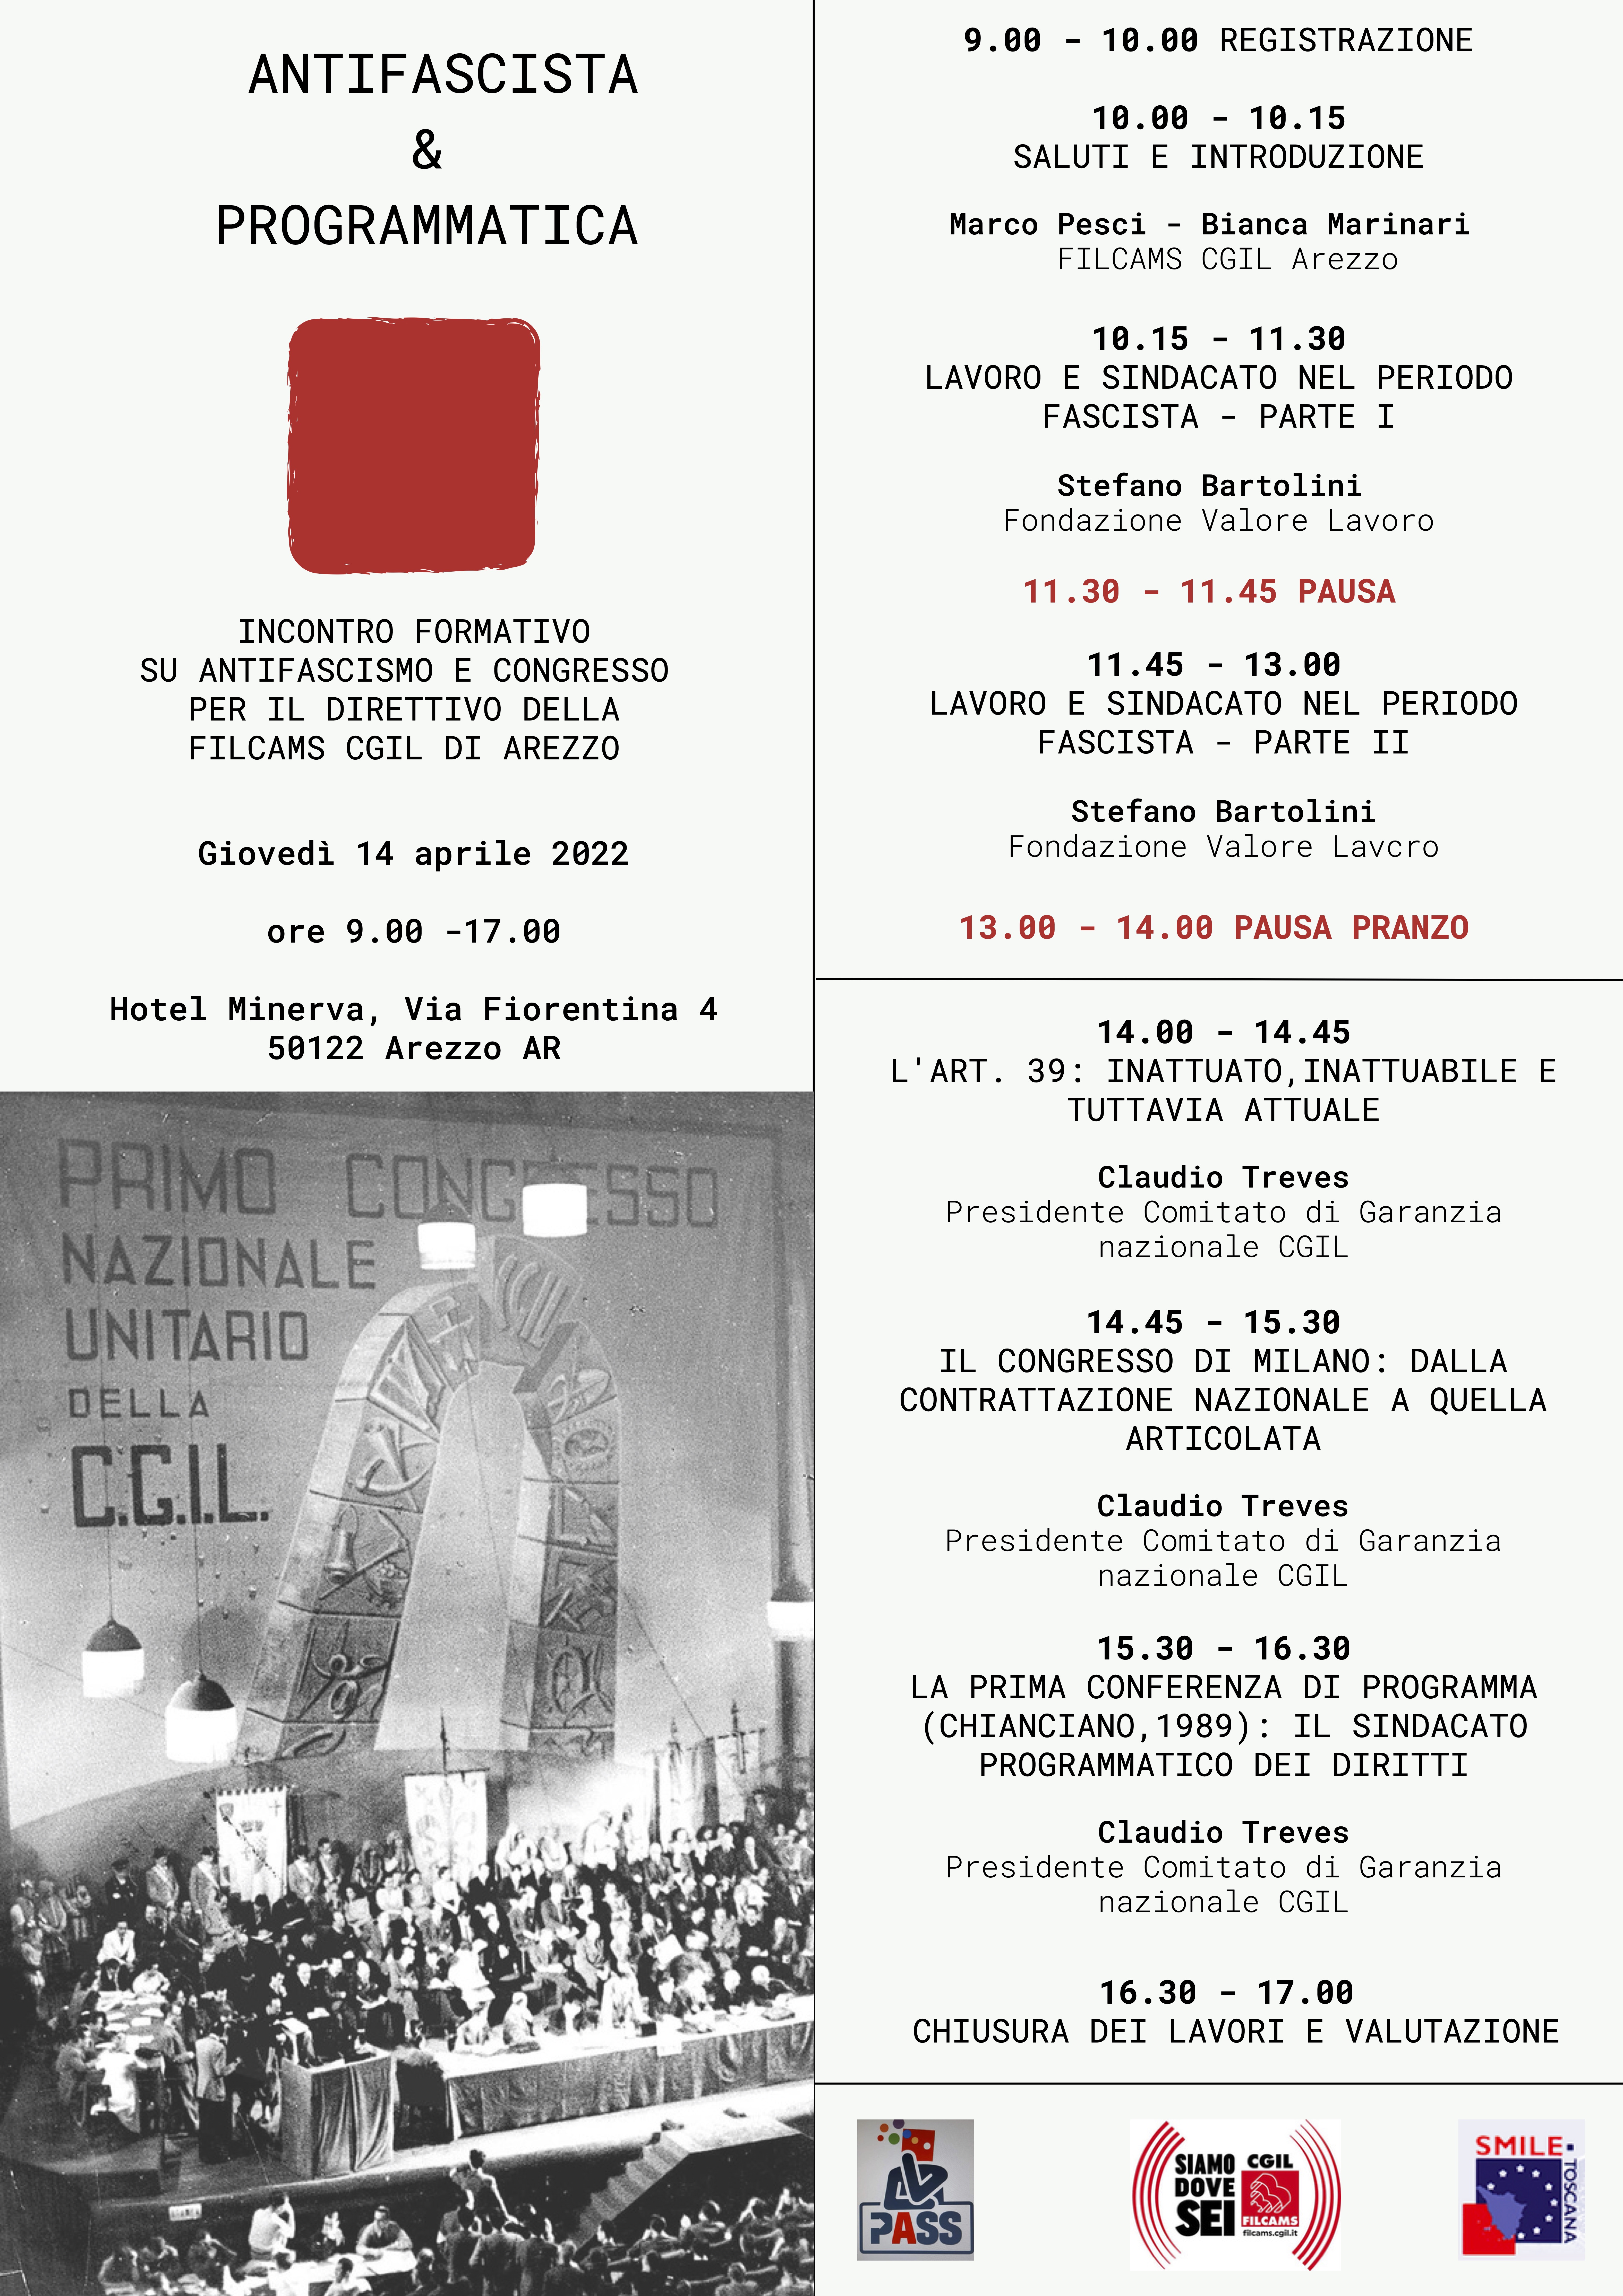 Volantino-Programma corso antifascismo e congresso Direttivo Filcams Arezzo (1)